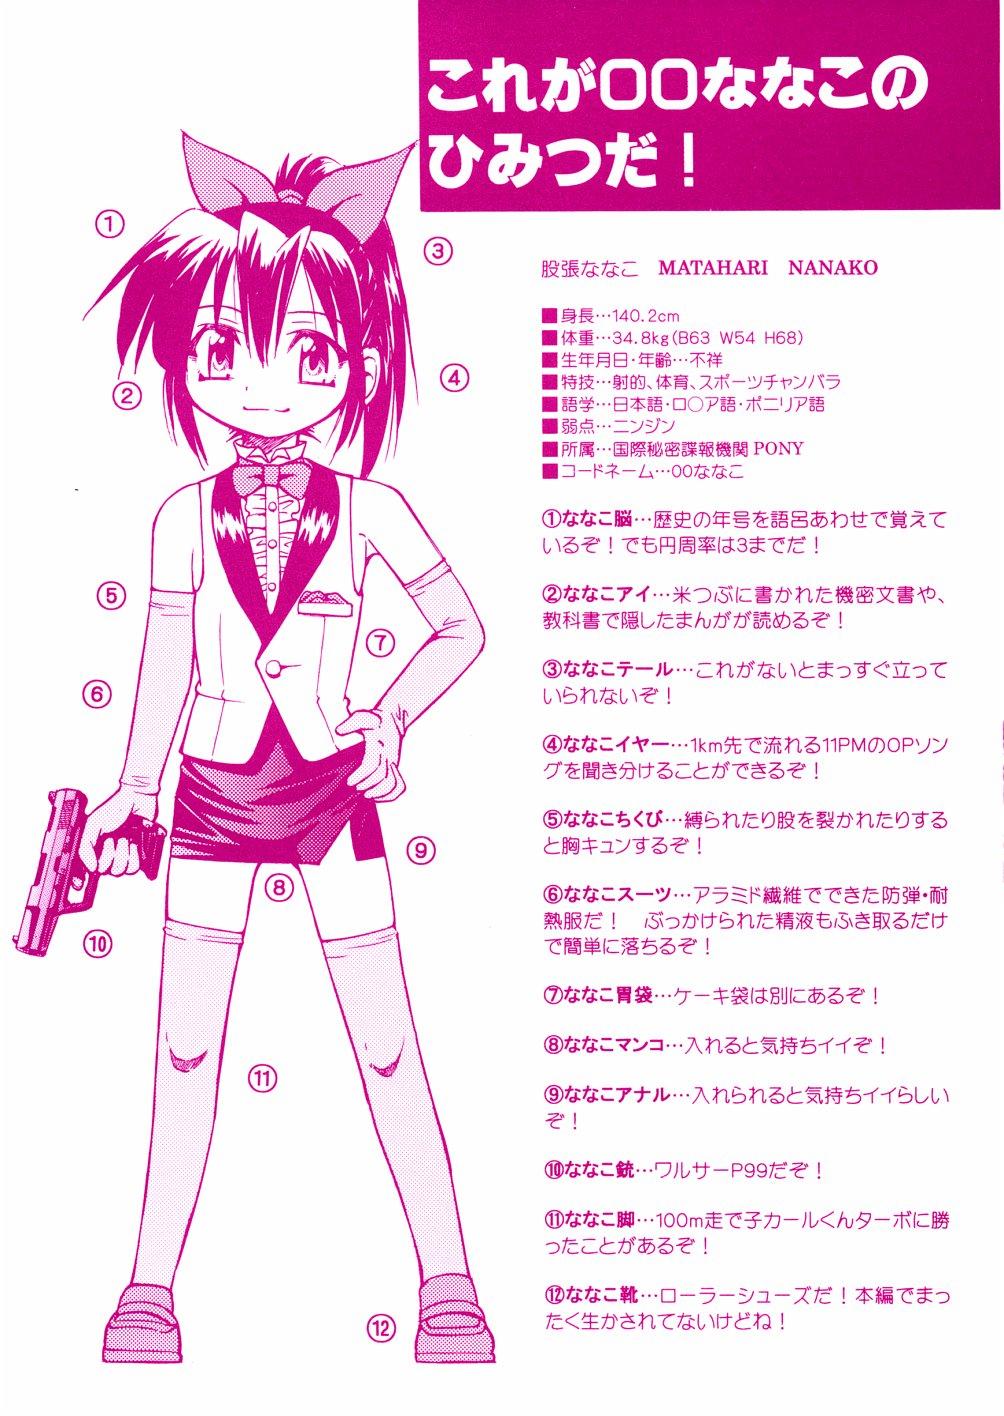 Housewife 00 Nanako - Agent Nanako Camporn - Picture 3